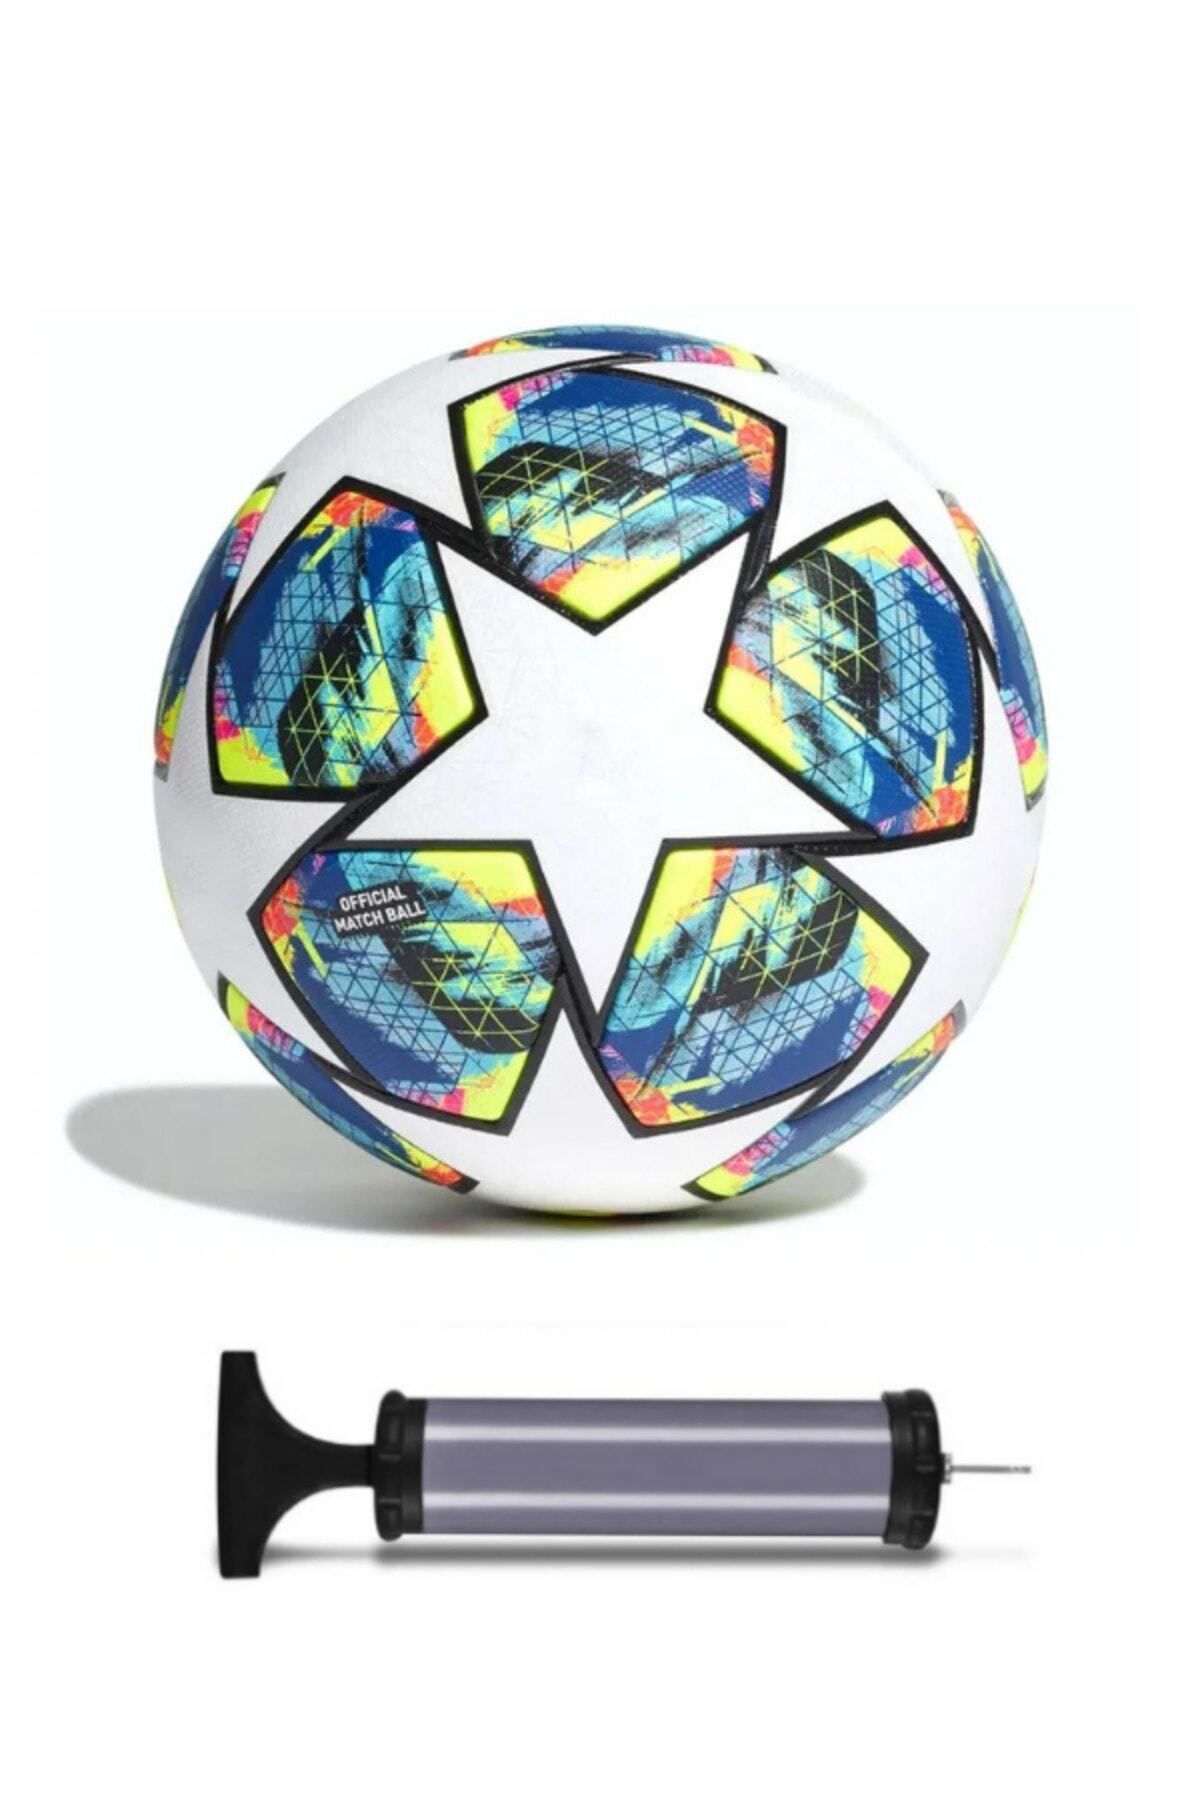 Janissary Champions League Tasarımı Dikişli Futbol Topu, 5 Numara + Pompa